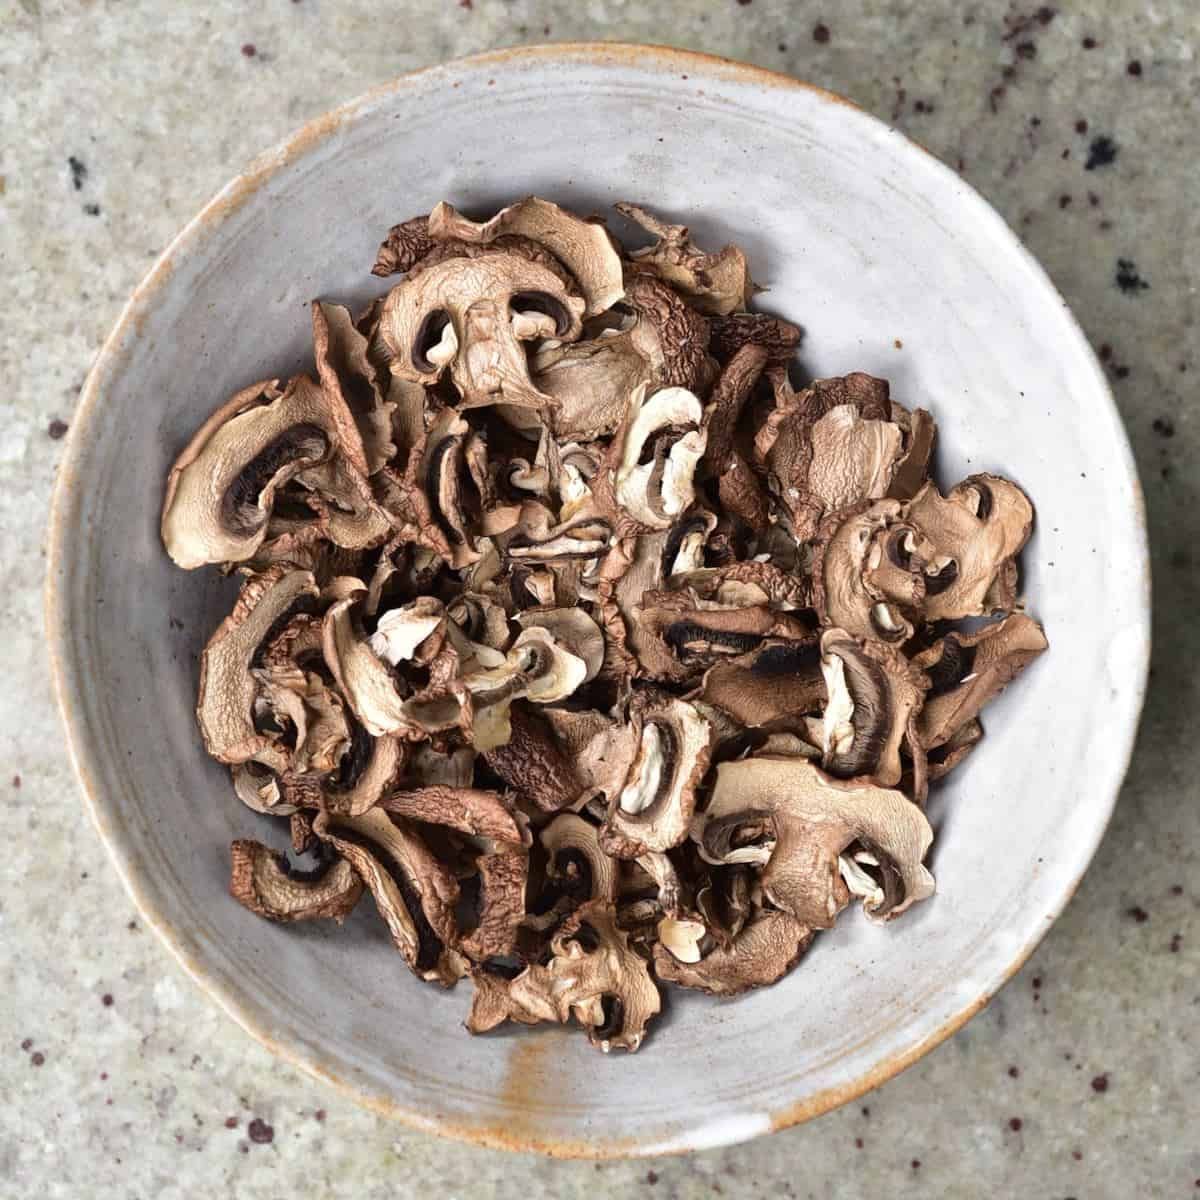 Dehydrated Mushroom Image